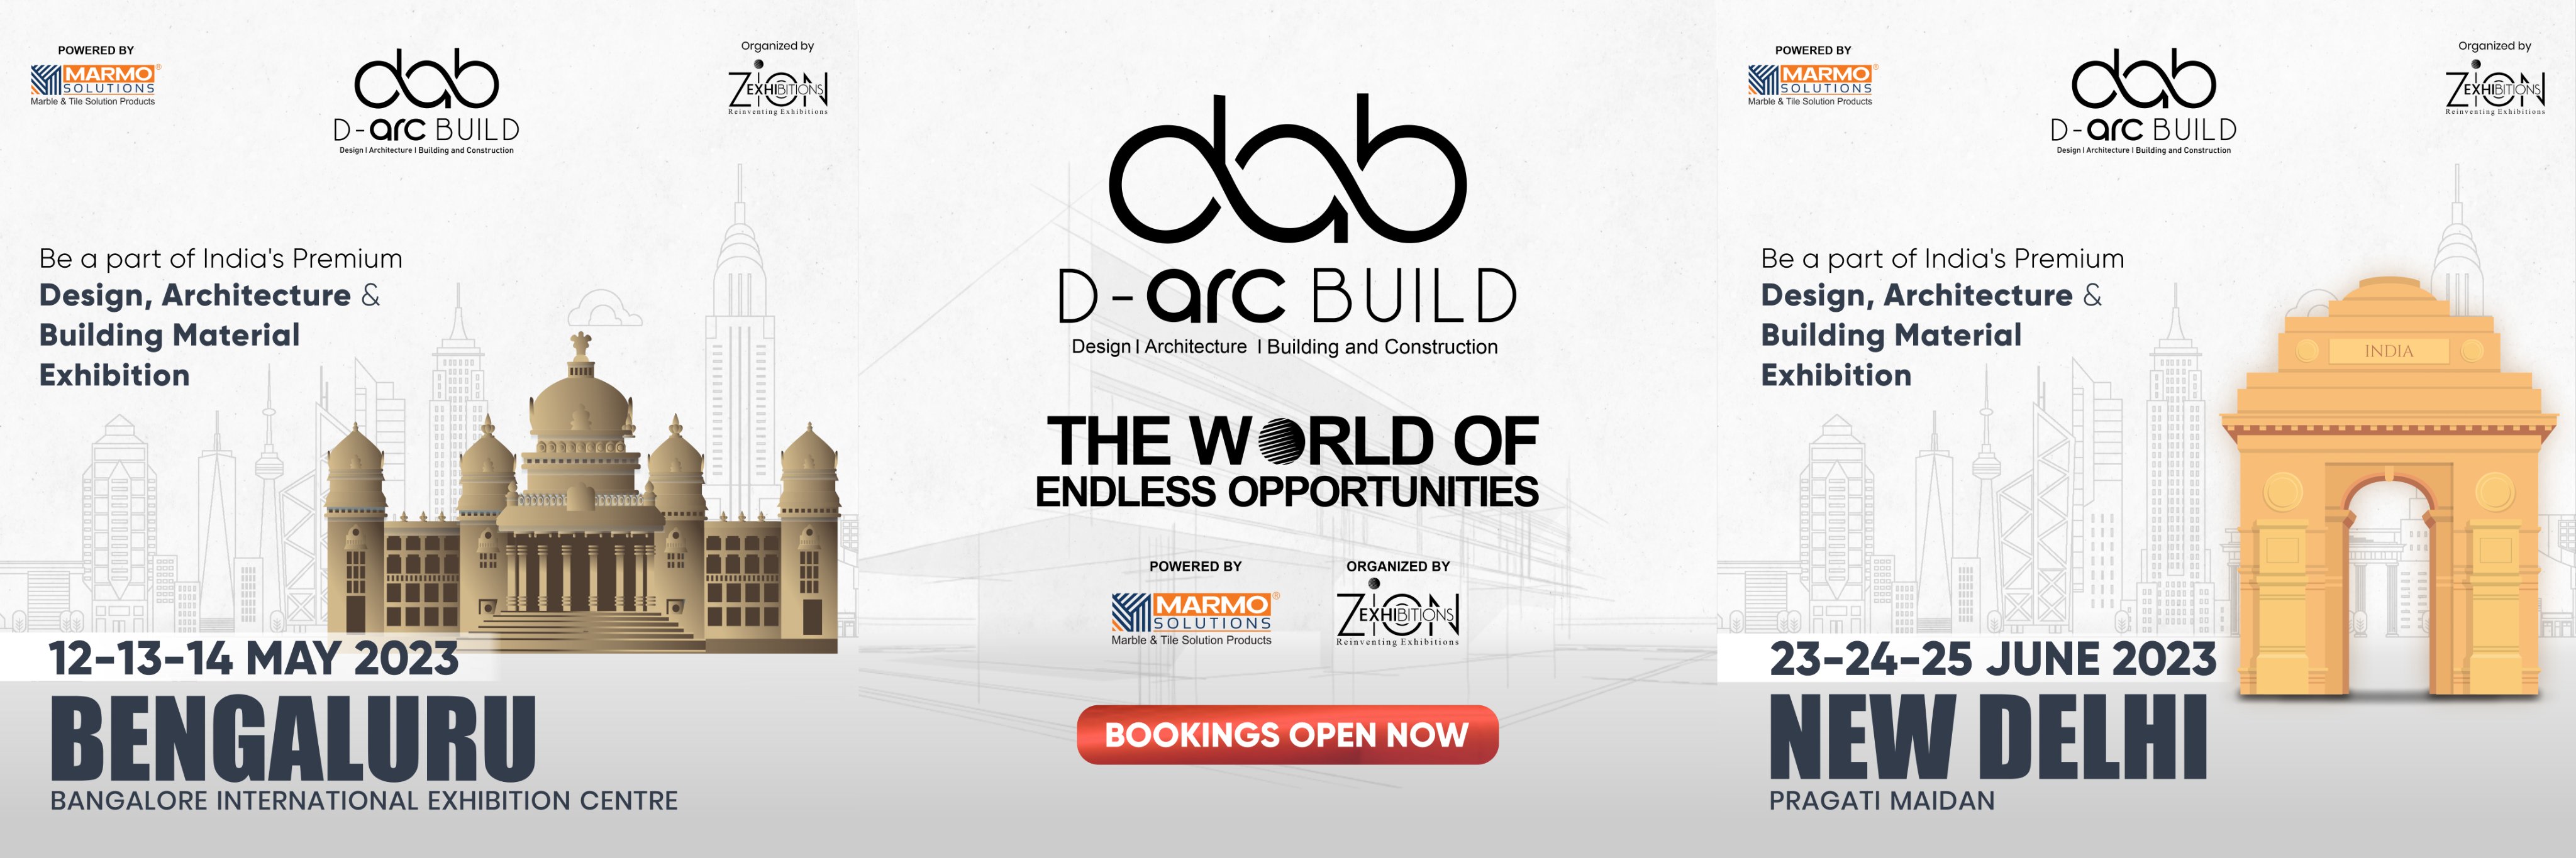 D- Arc Build Expo- New Delhi, Central Delhi, Delhi, India